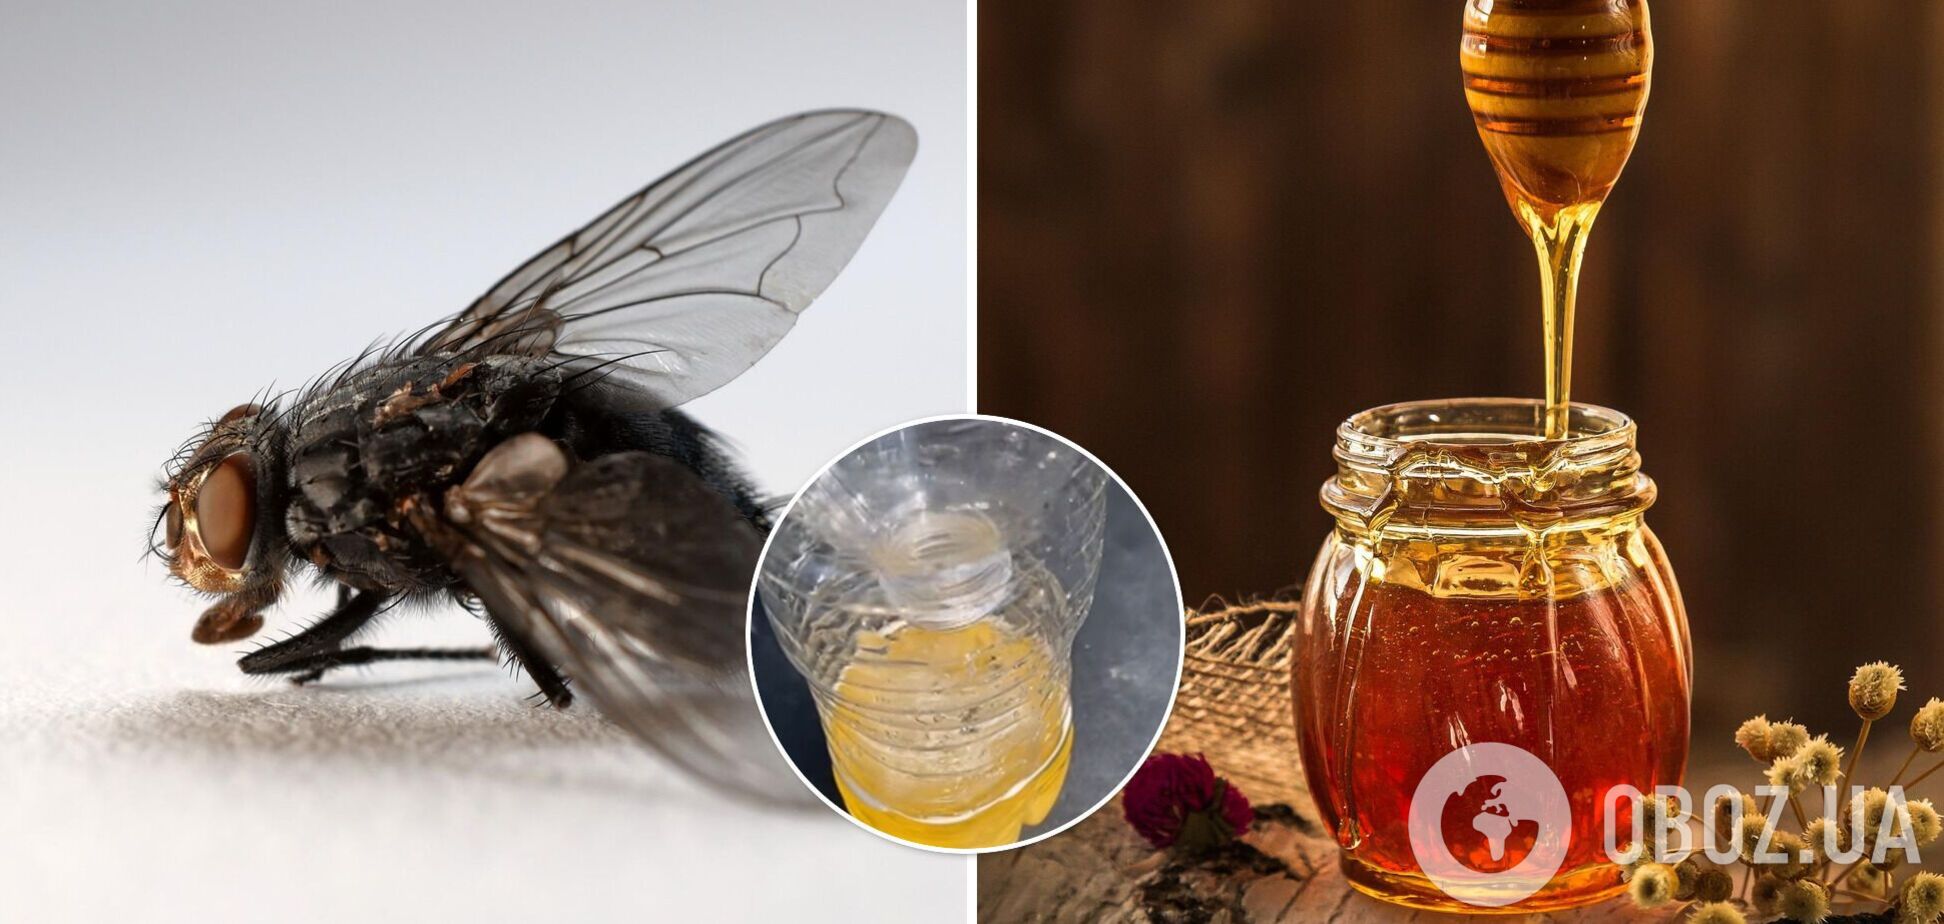 Как избавиться от мух дома: лайфхак с сахаром, медом и водой покорил сеть